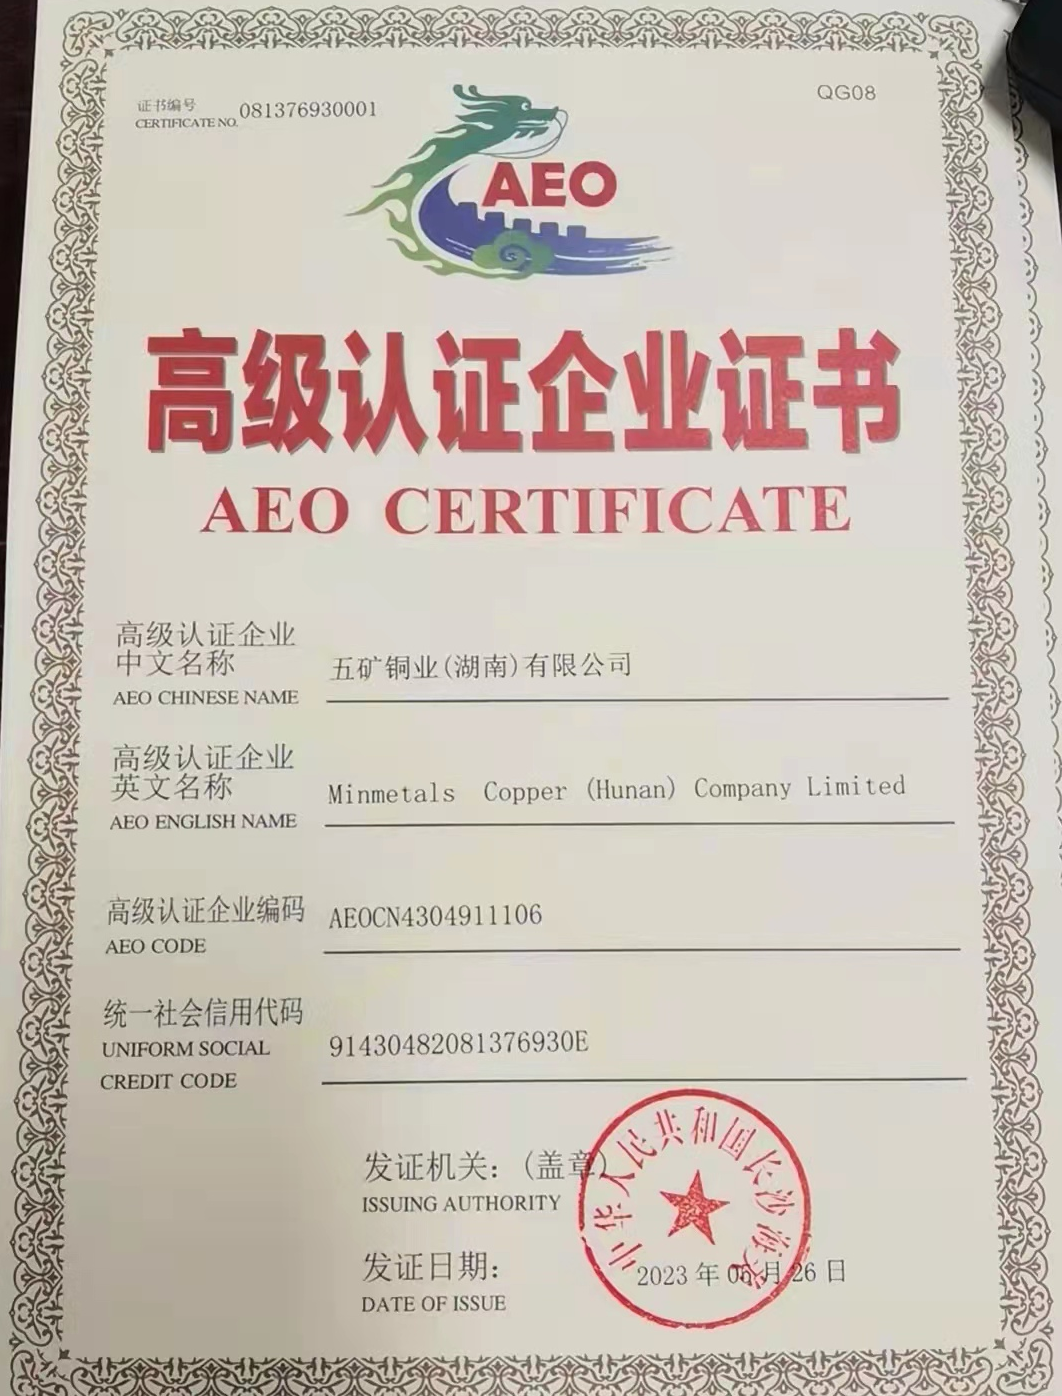 五矿铜业公司通过AEO高级认证，为高质量发展注入新活力